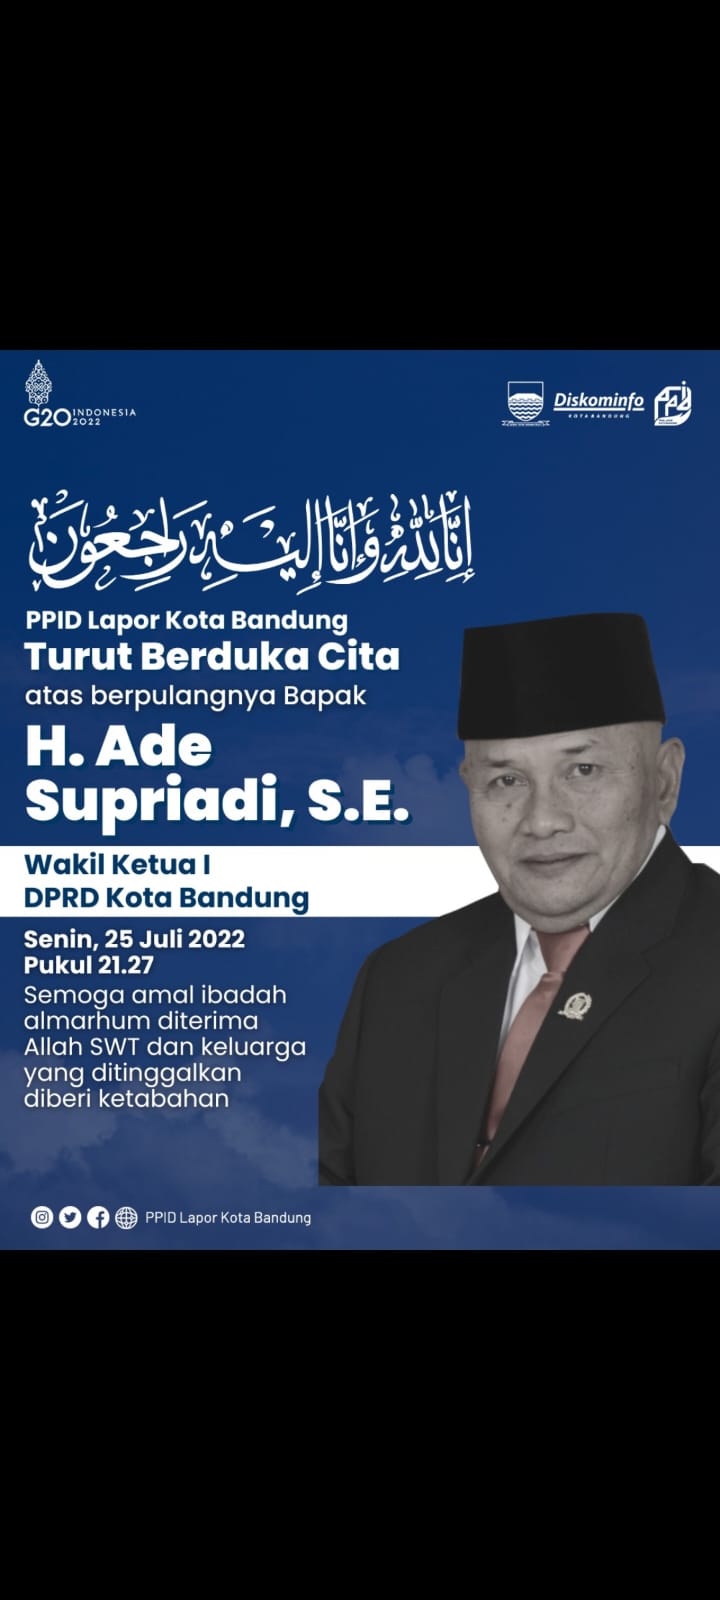 Wakil Ketua DPRD Kota Bandung, Ade Supriadi Wafat, Yana Berduka